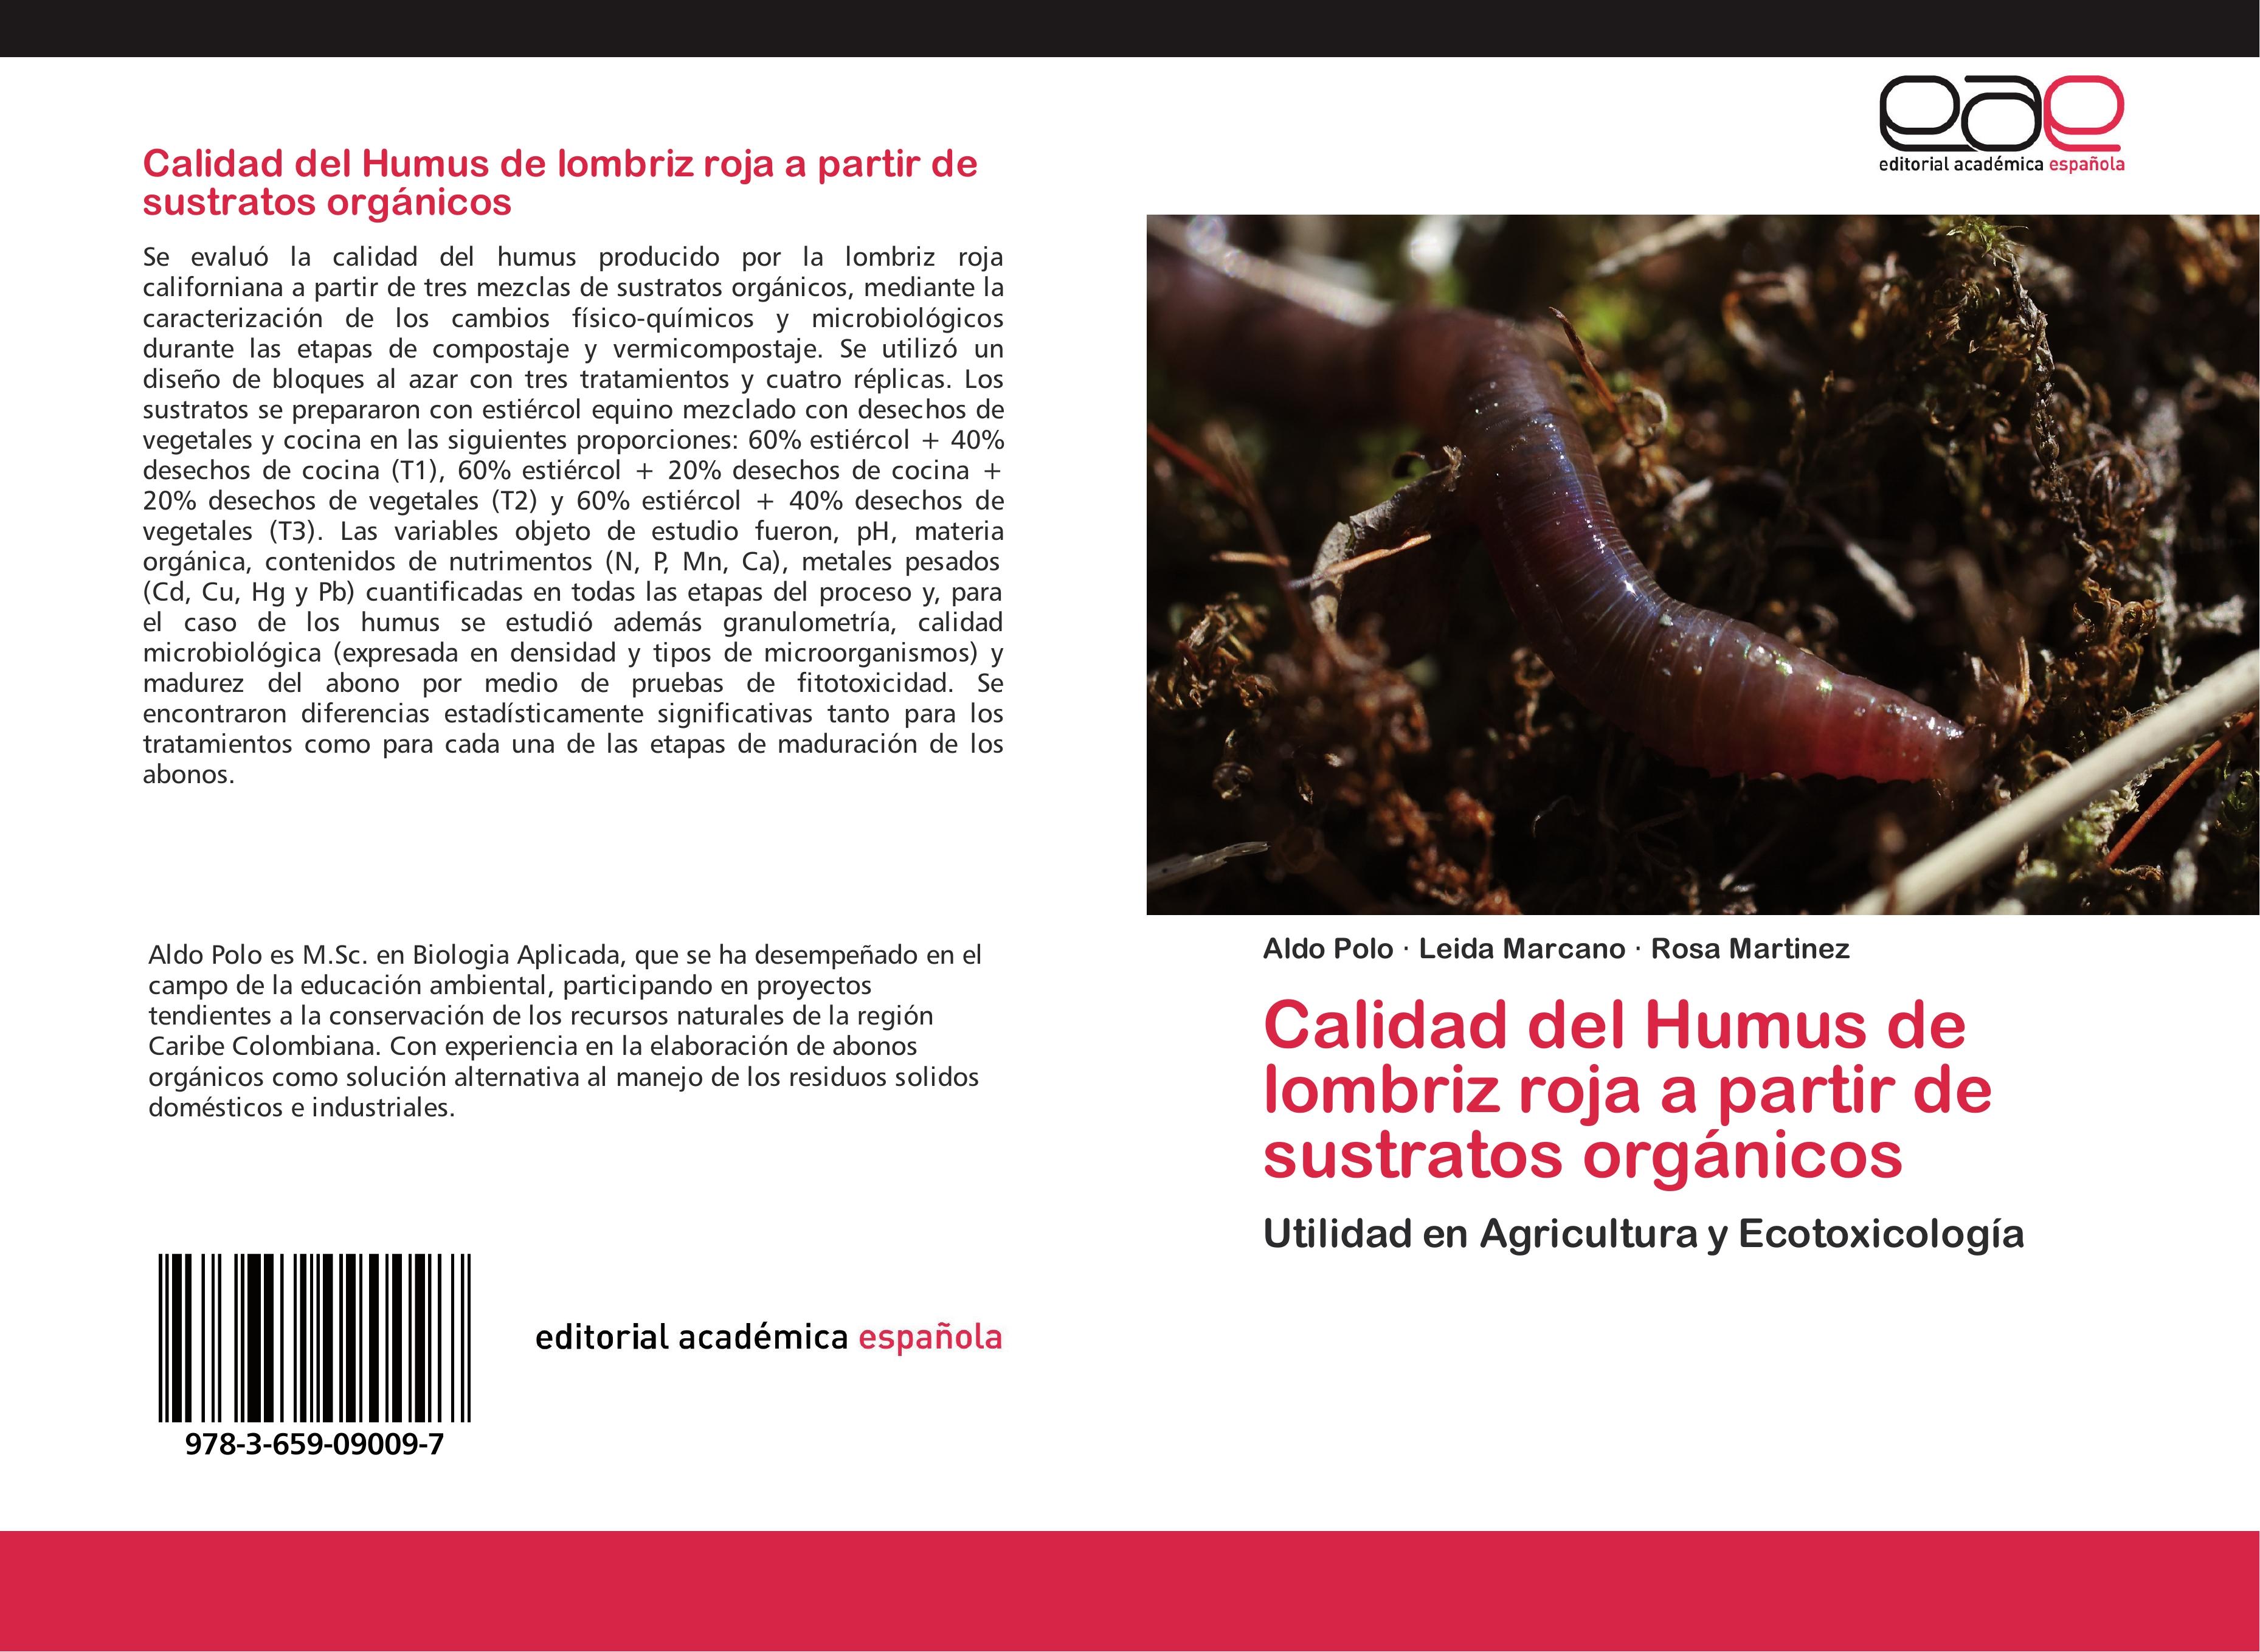 Calidad del Humus de lombriz roja a partir de sustratos orgánicos - Aldo Polo|Leida Marcano|Rosa Martinez